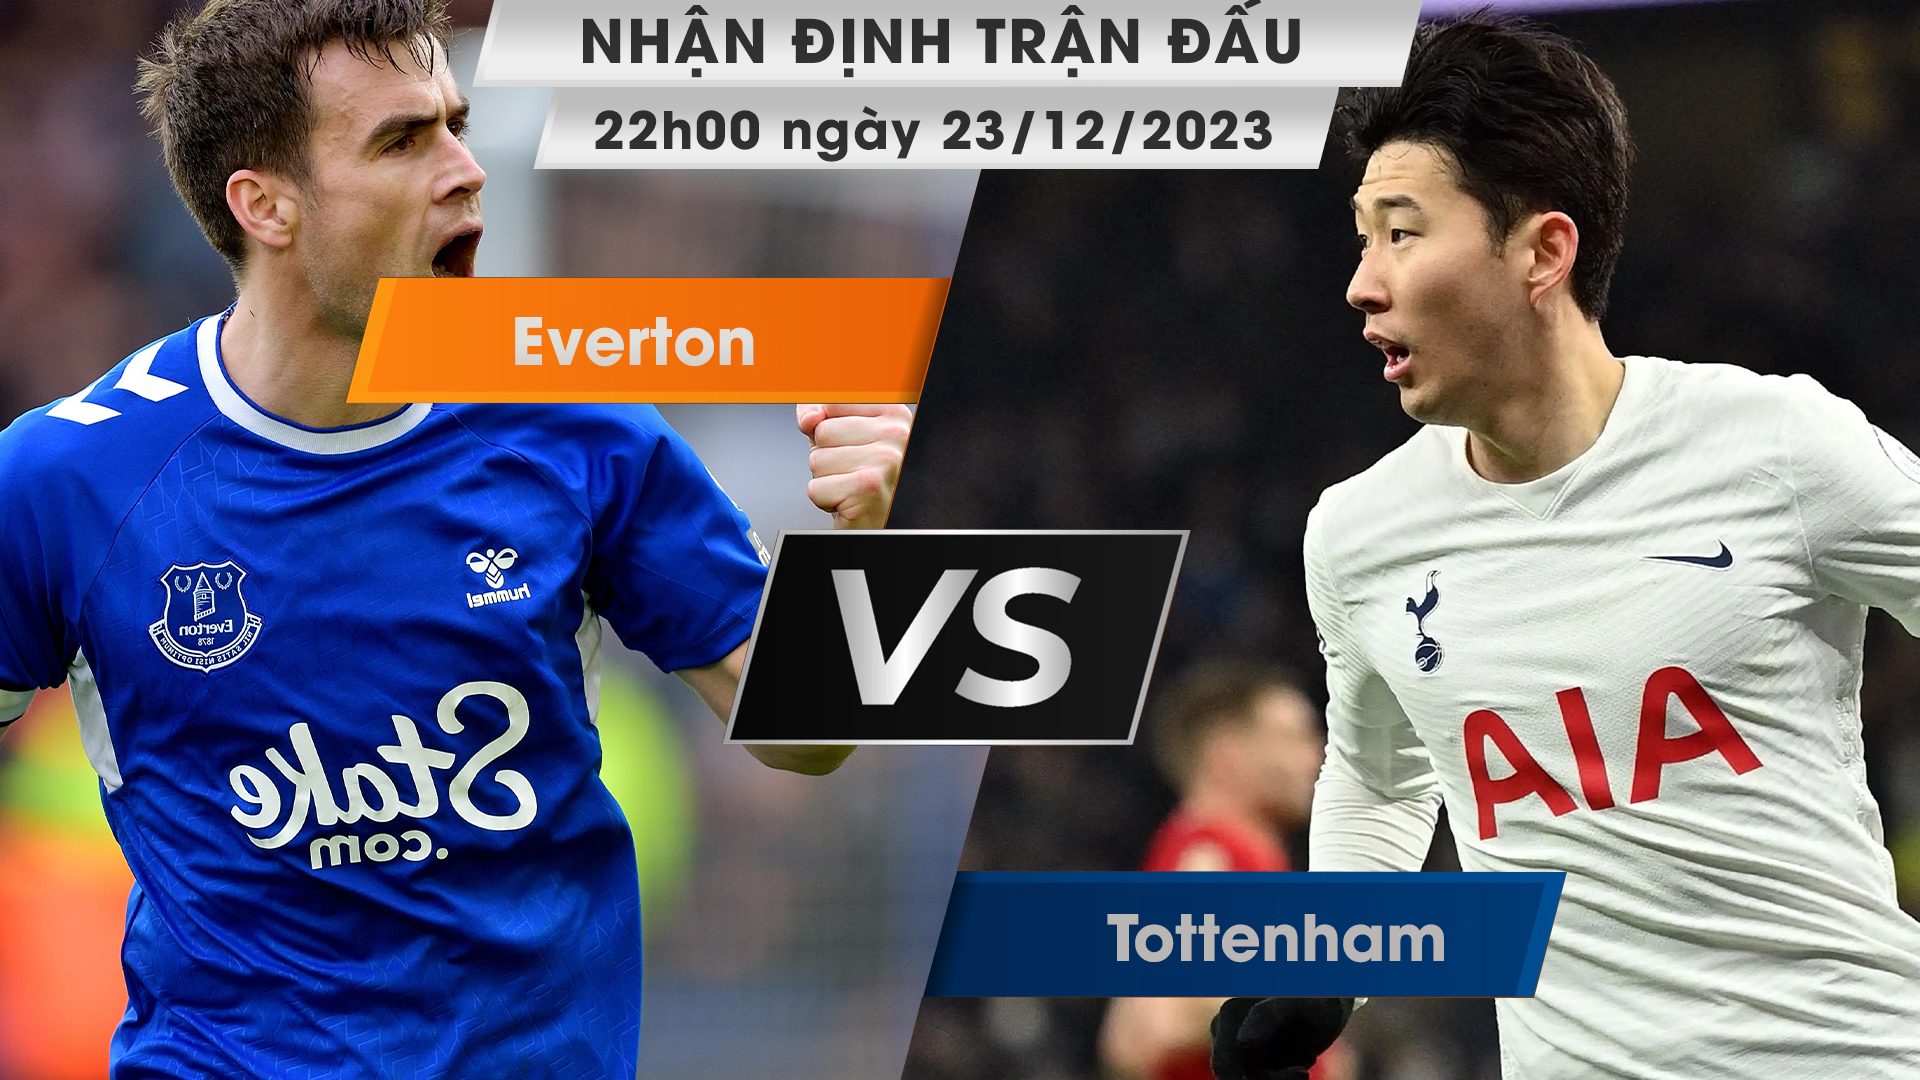 Nhận định, dự đoán Tottenham vs Everton, 22h00 ngày 23/12/2023